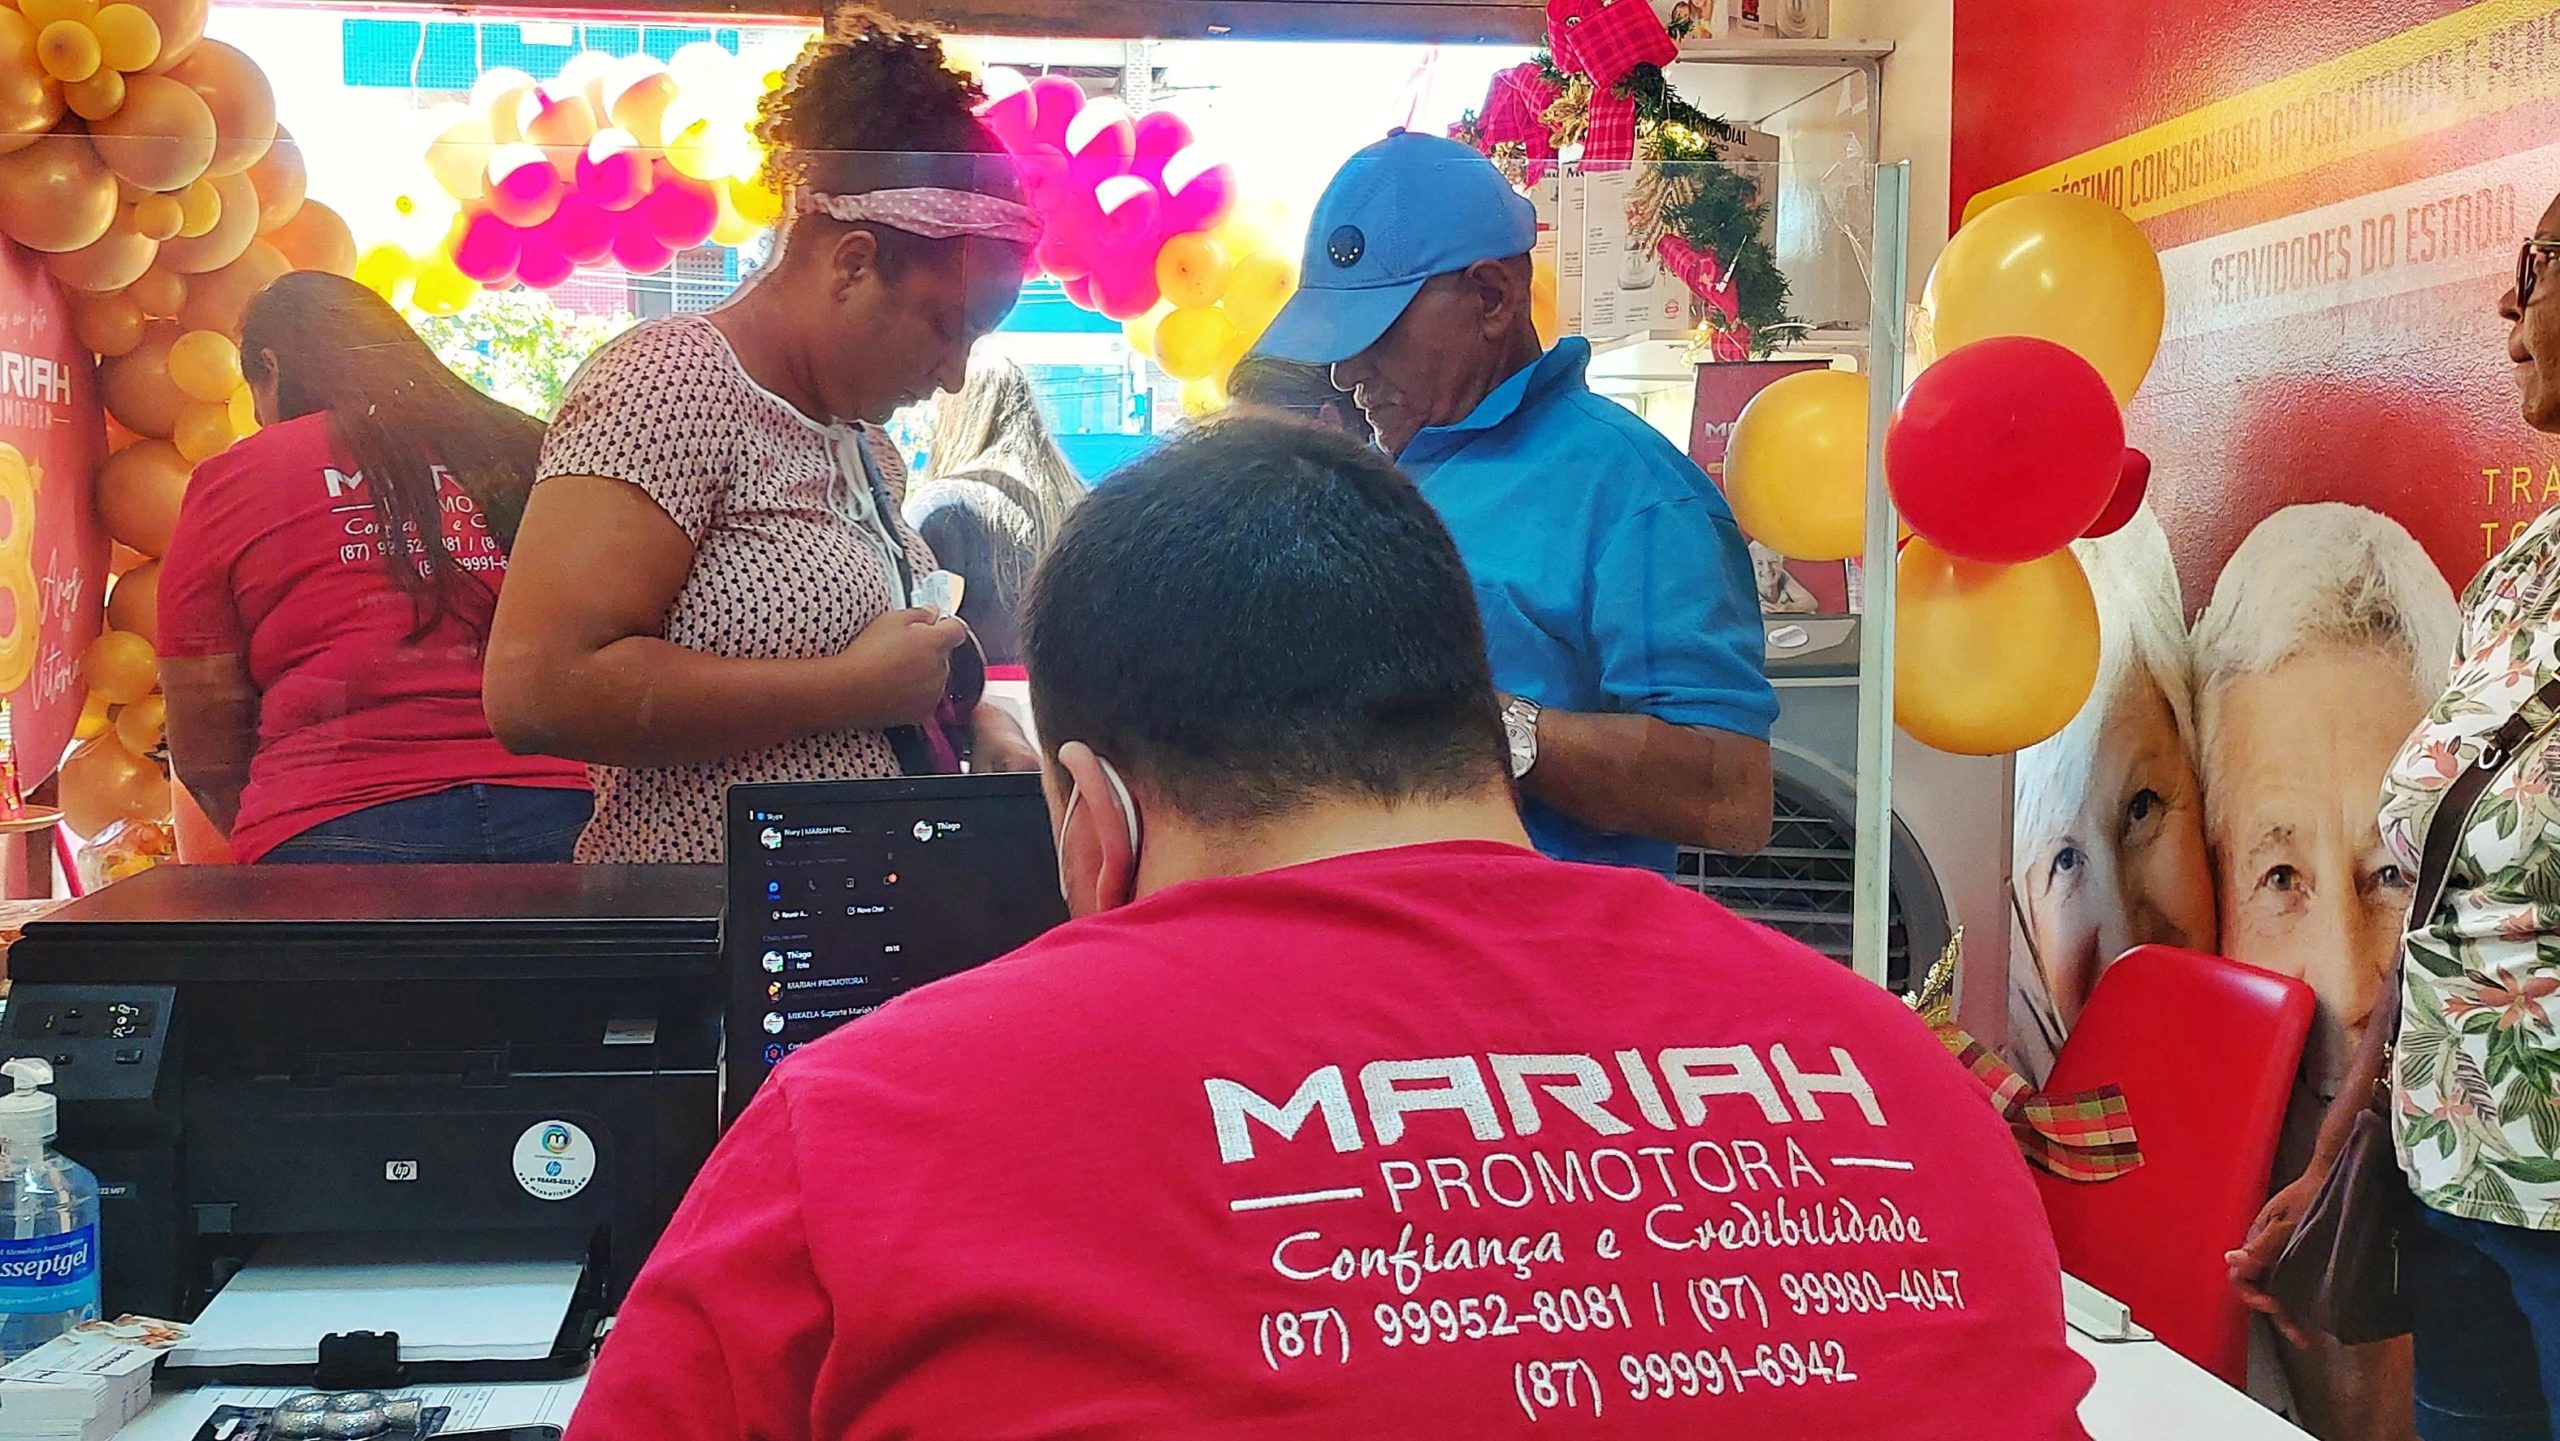 Mariah Promotora faz 8 anos em ST e ganha a confiança da região